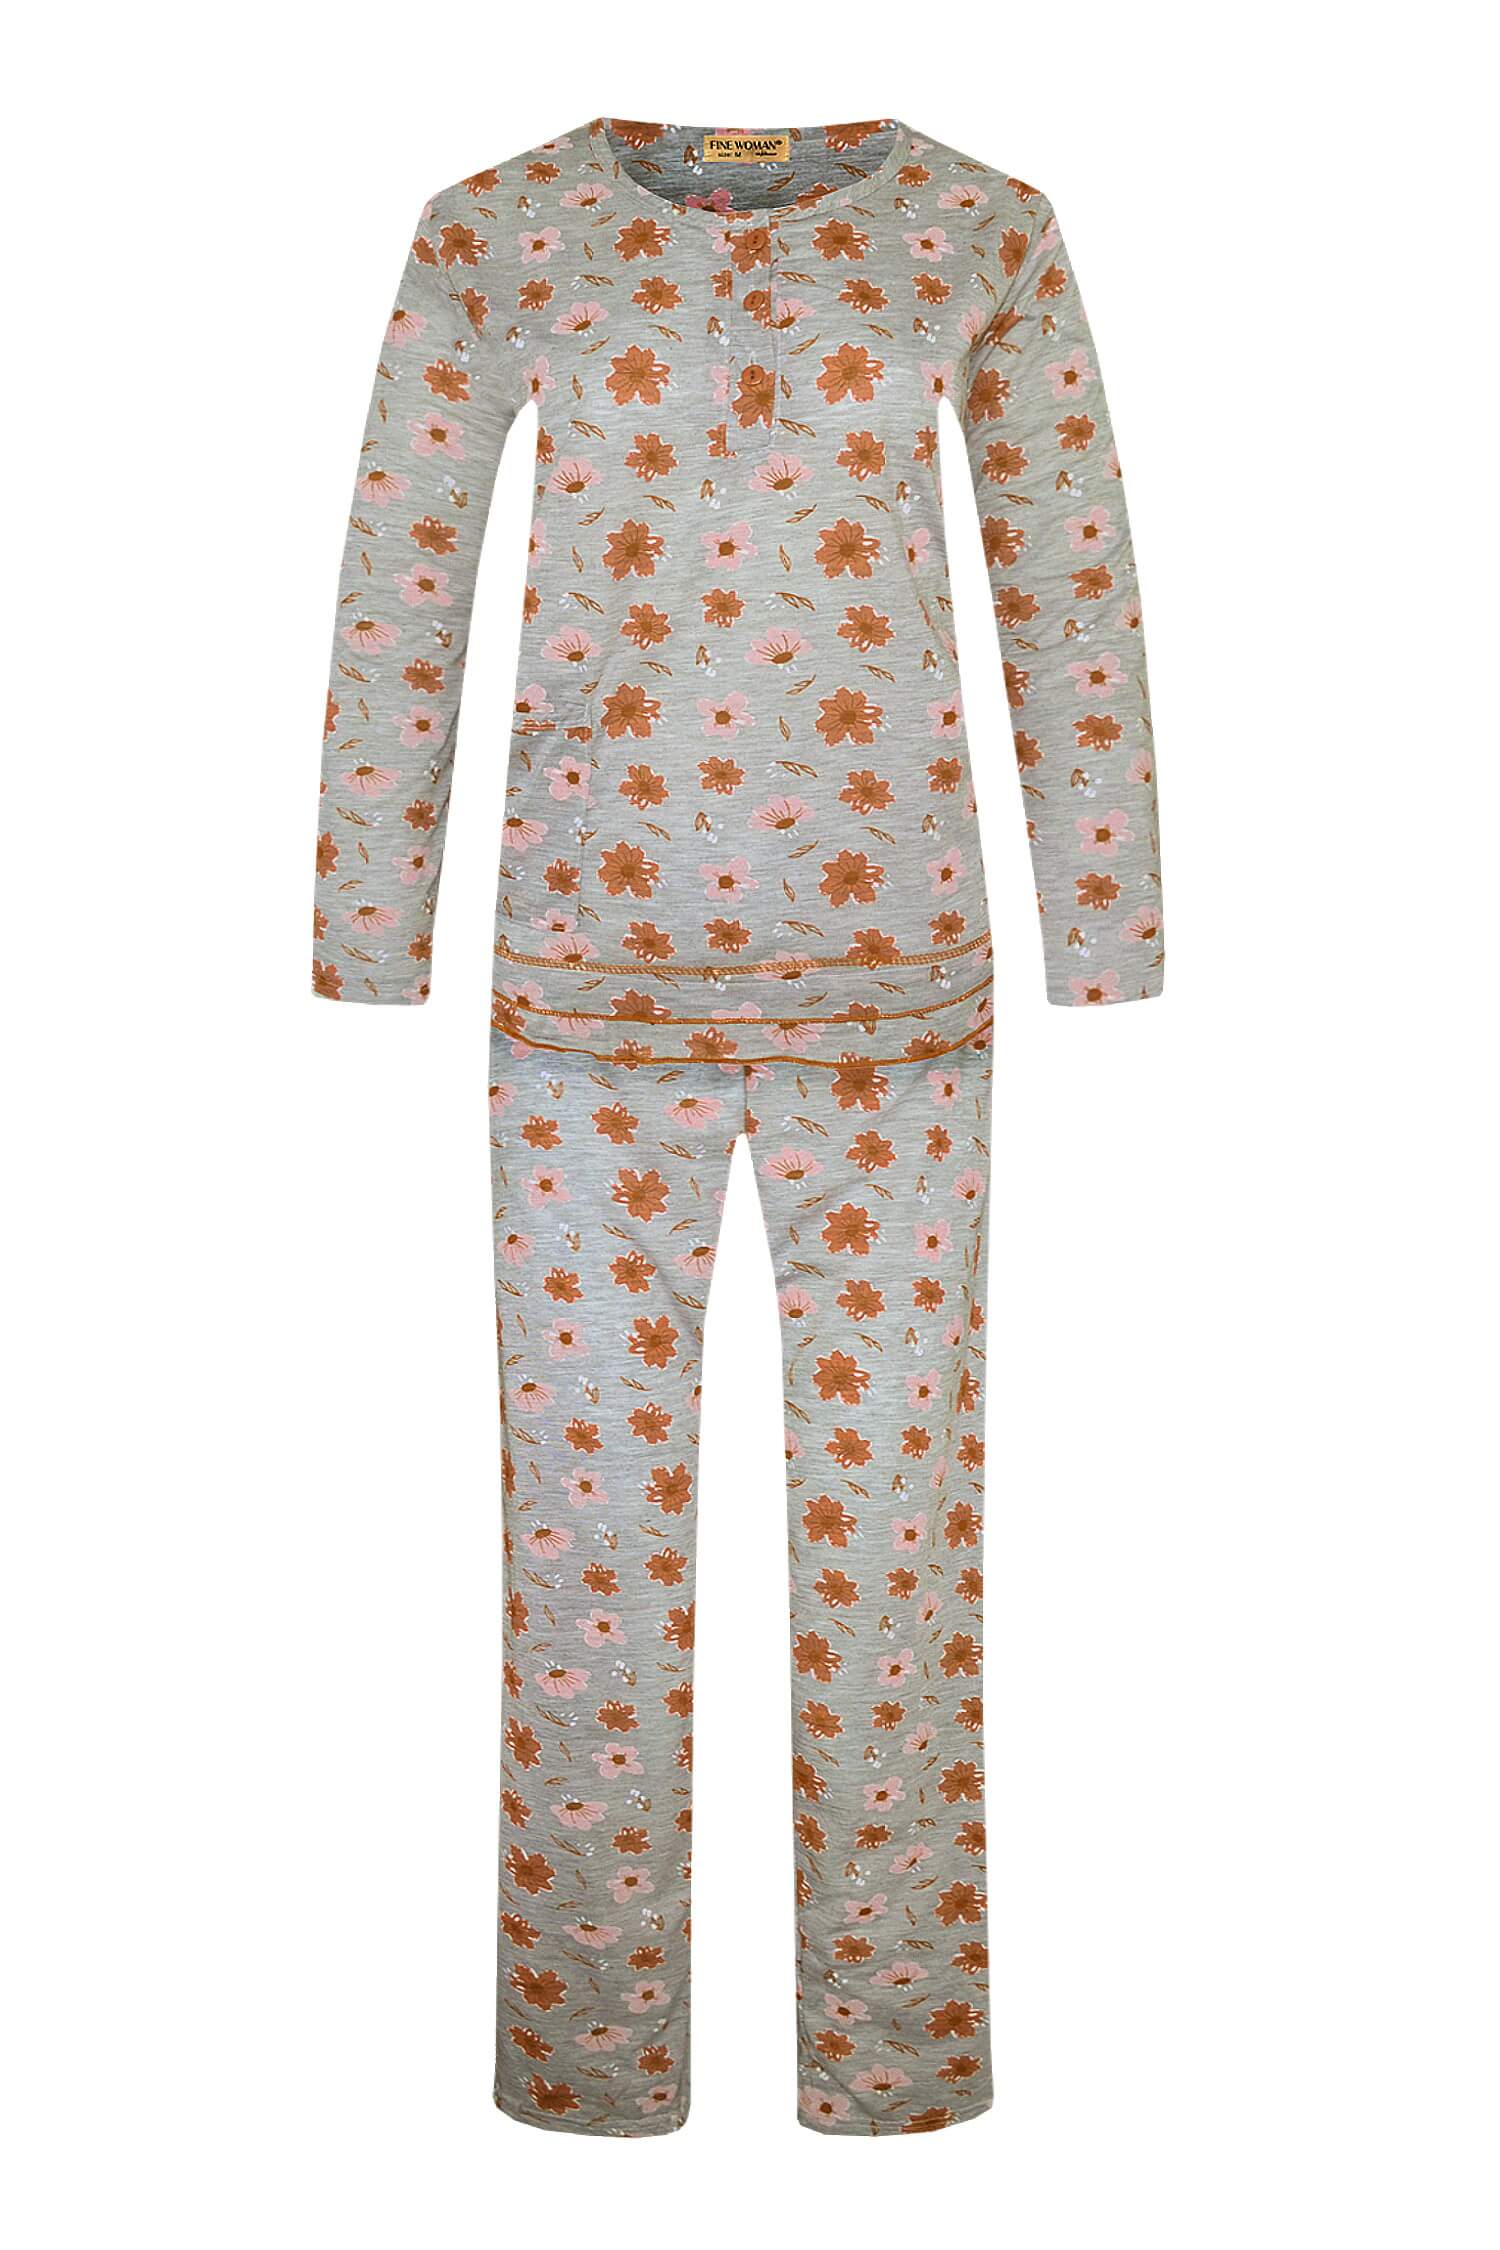 Arenda dámské dlouhé pyžamo 2297 XL oranžová